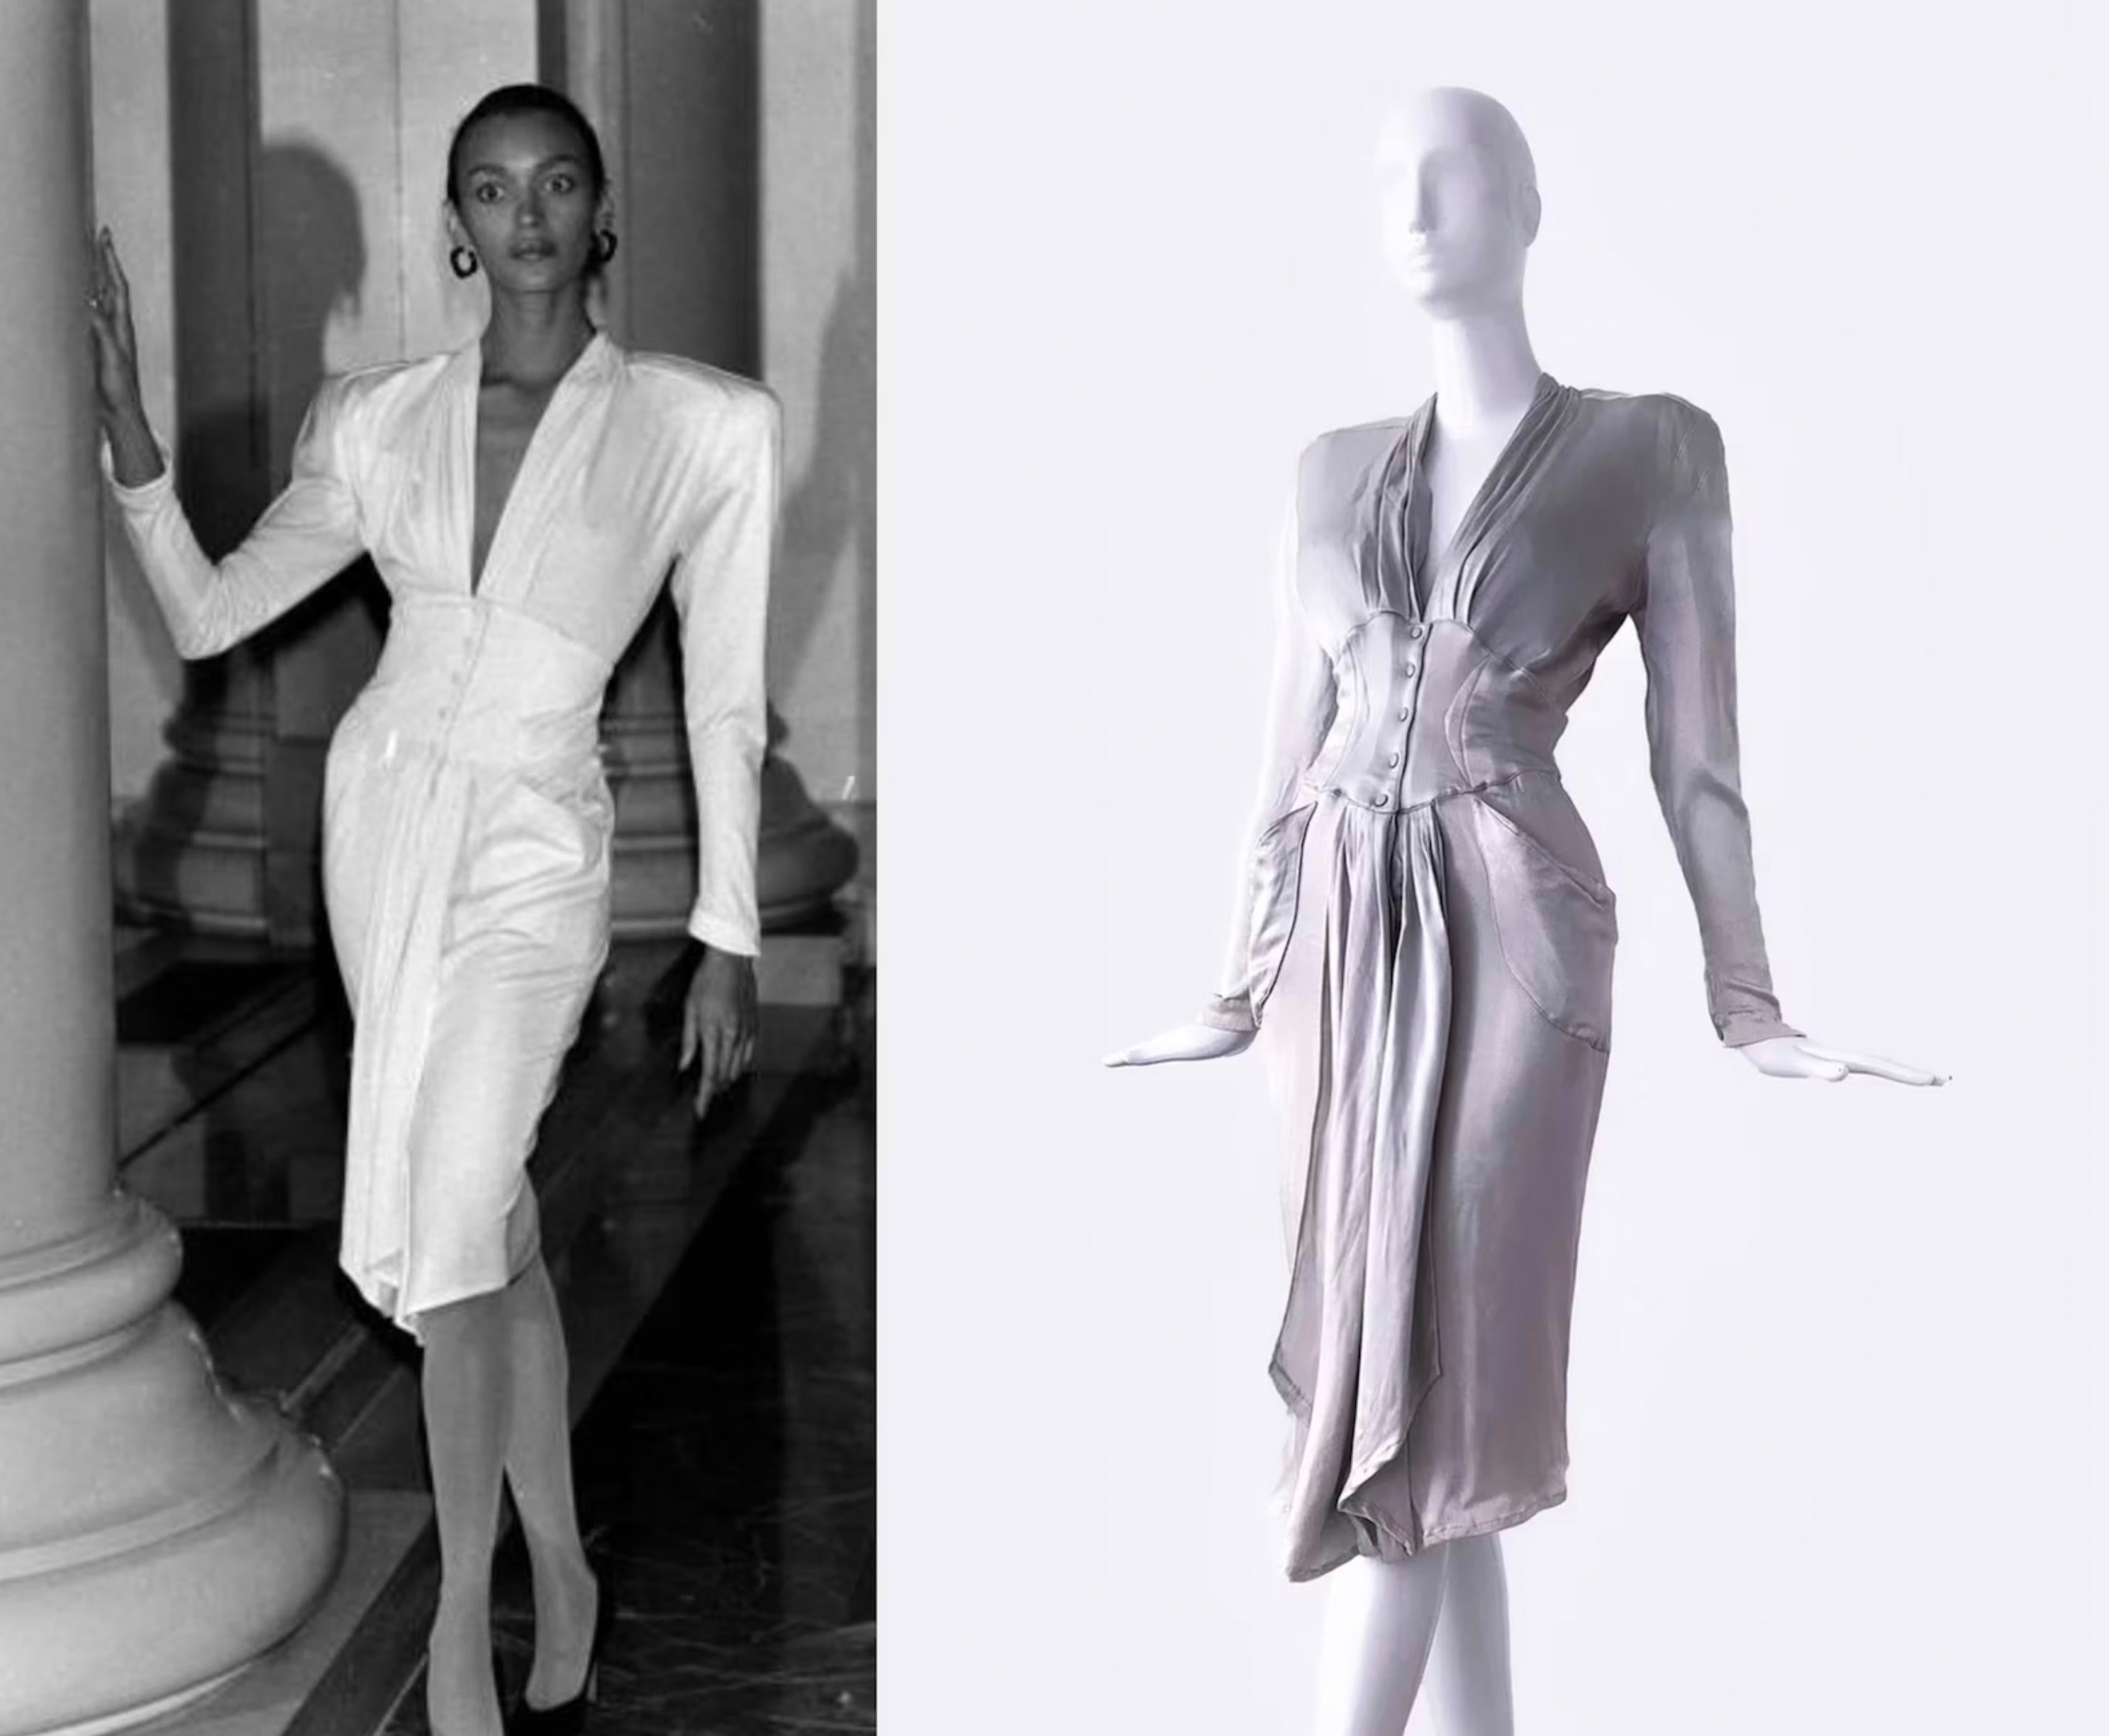 
Dieses Epic Goddess Dress ist alles. Äußerst seltene Kreation von Thierry Mugler, FW 1986 Collection'S. Flüssig-seidiger, silber-metallischer Traum in einer atemberaubenden, taillierten Form.
Tiefer gewellter V-Ausschnitt und betonte Taille,